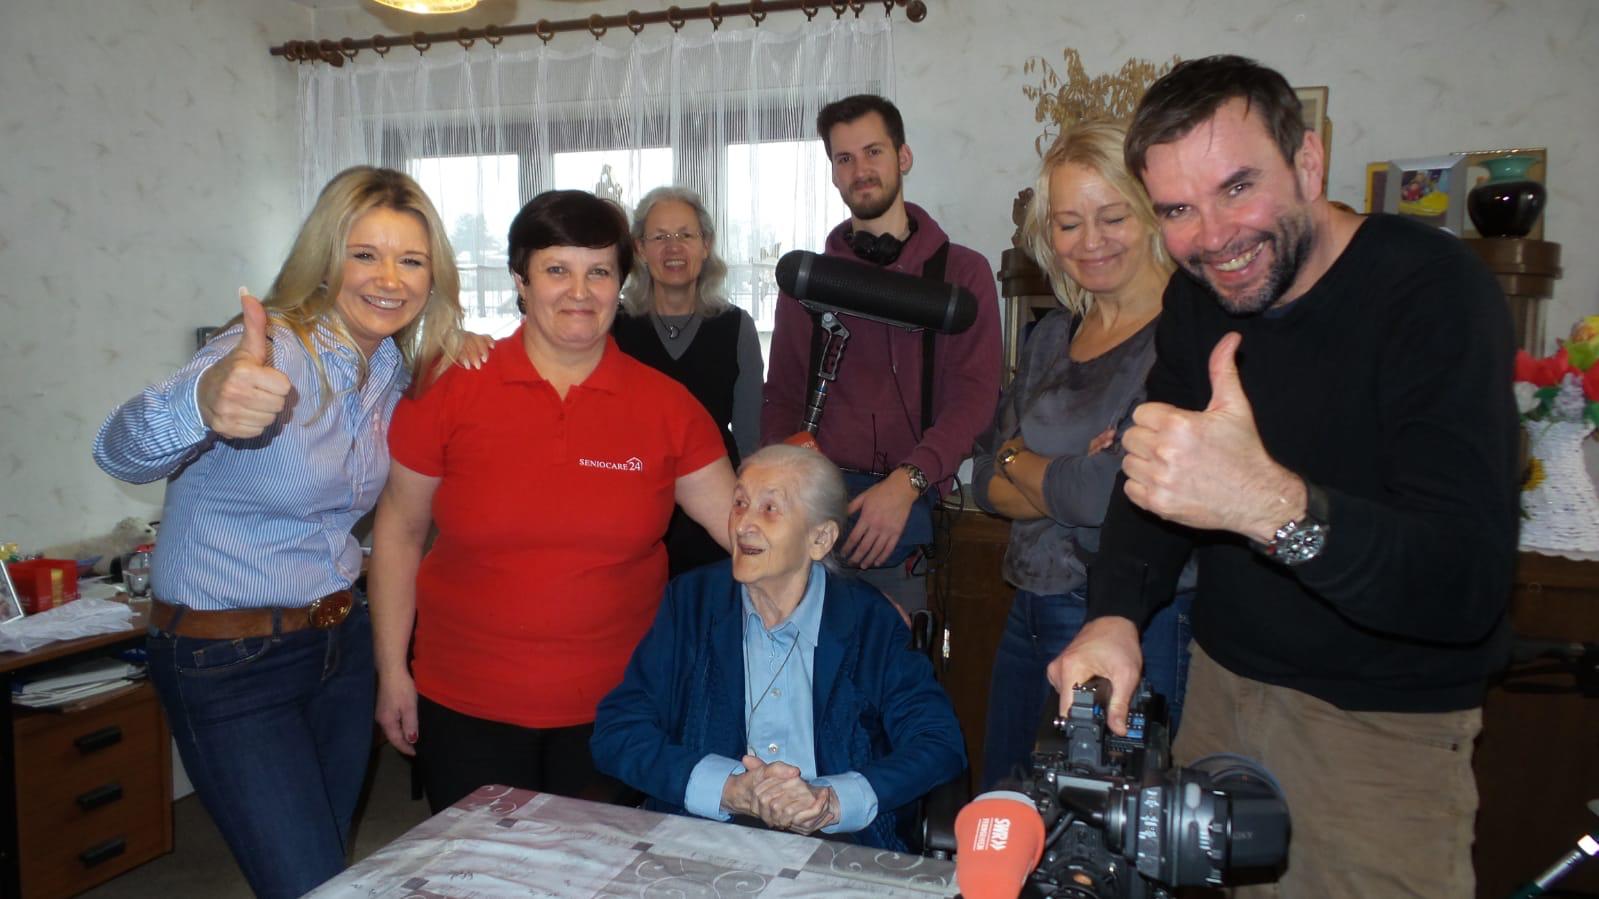 Seniocare24 Pflege Betreuung Zuhause Pflegepersonal Seniorenpflege Osteuropa Lahr SWR Landesschau